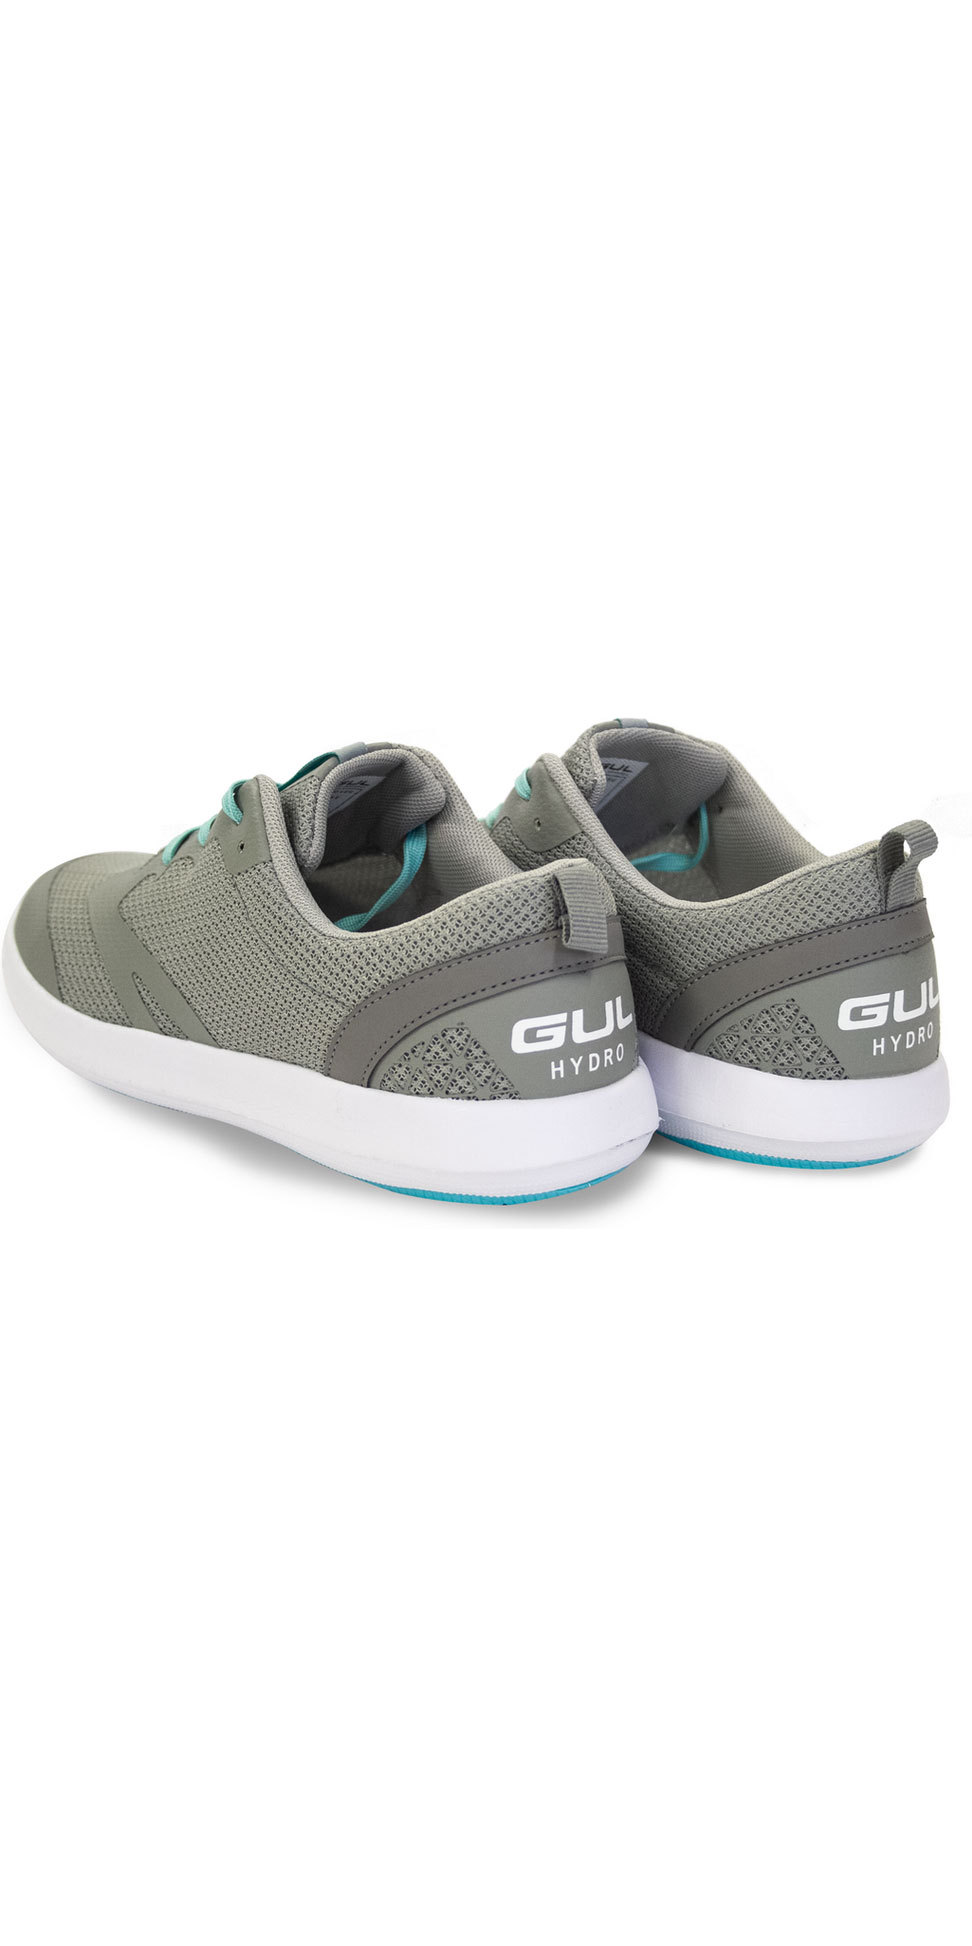 gul aqua shoes